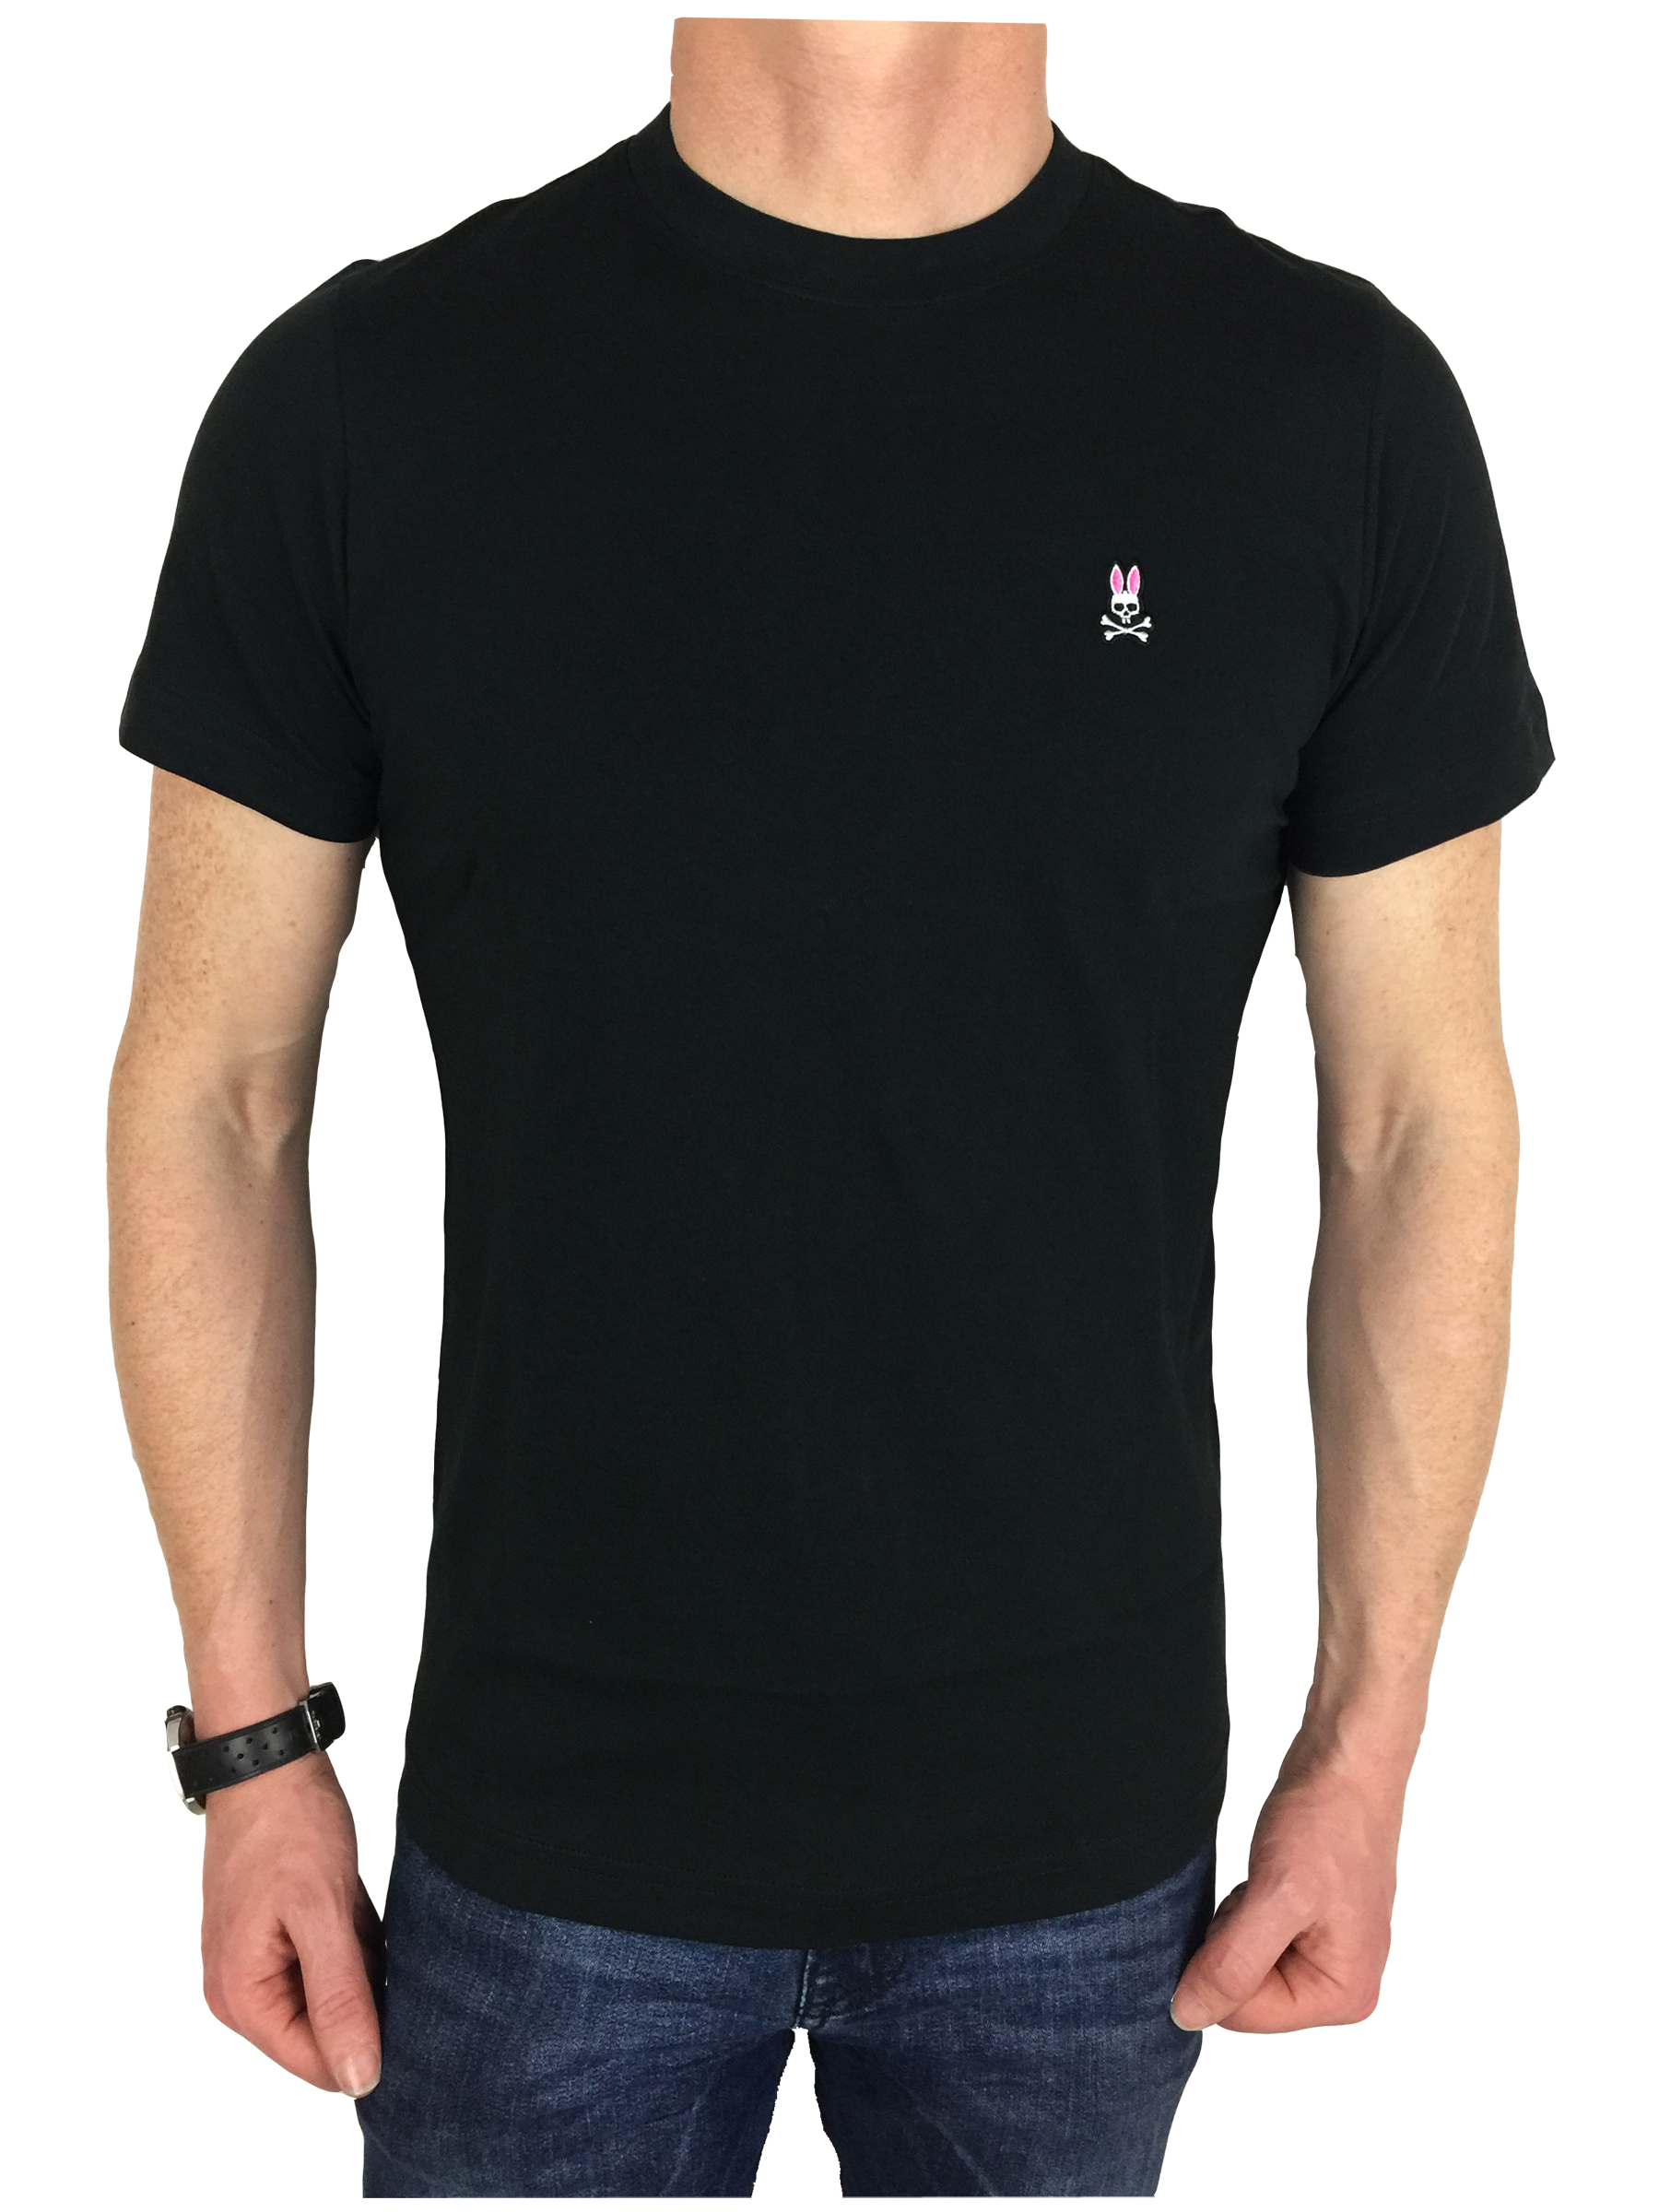 Camiseta para hombre Psycho Bunny con logotipo de marca en negro, nueva con  etiquetas, precio de venta sugerido por el fabricante 45 £ | eBay